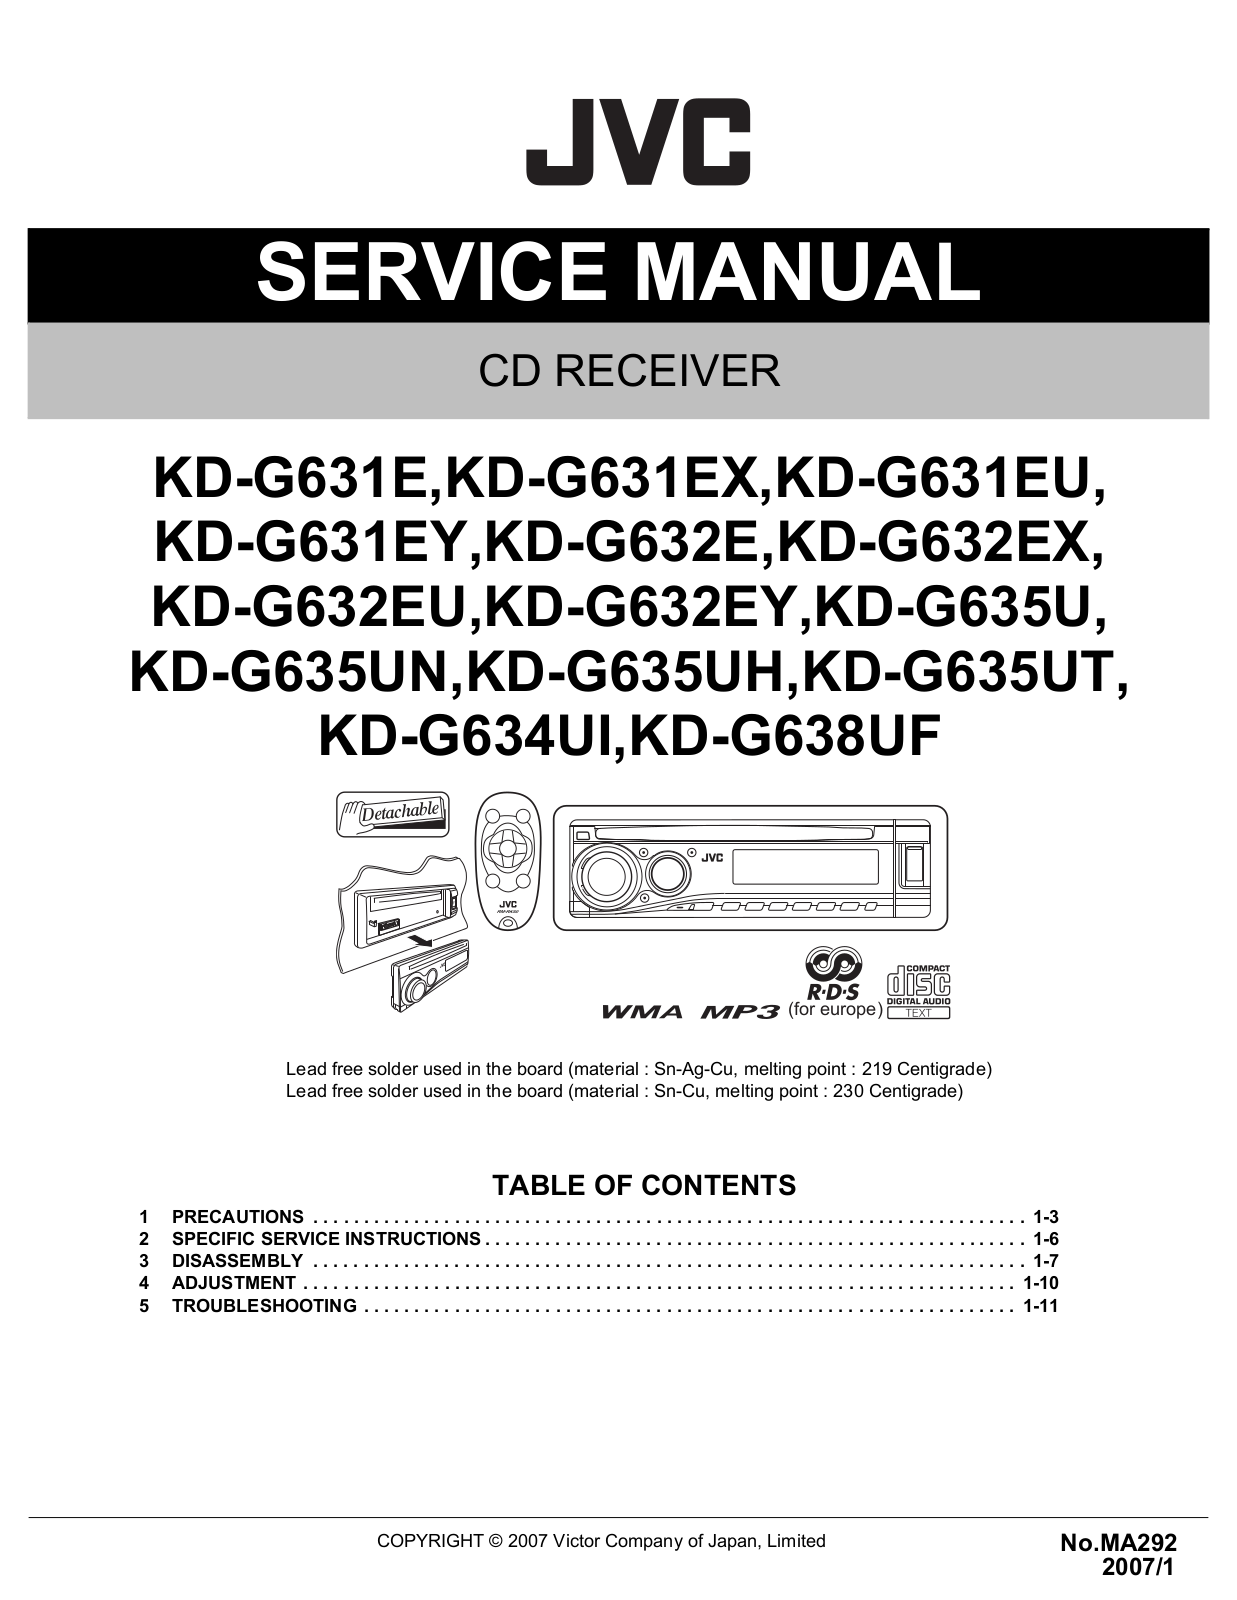 Jvc KD-G635, KD-G634, KD-G632, KD-G631, KD-G638 Service Manual